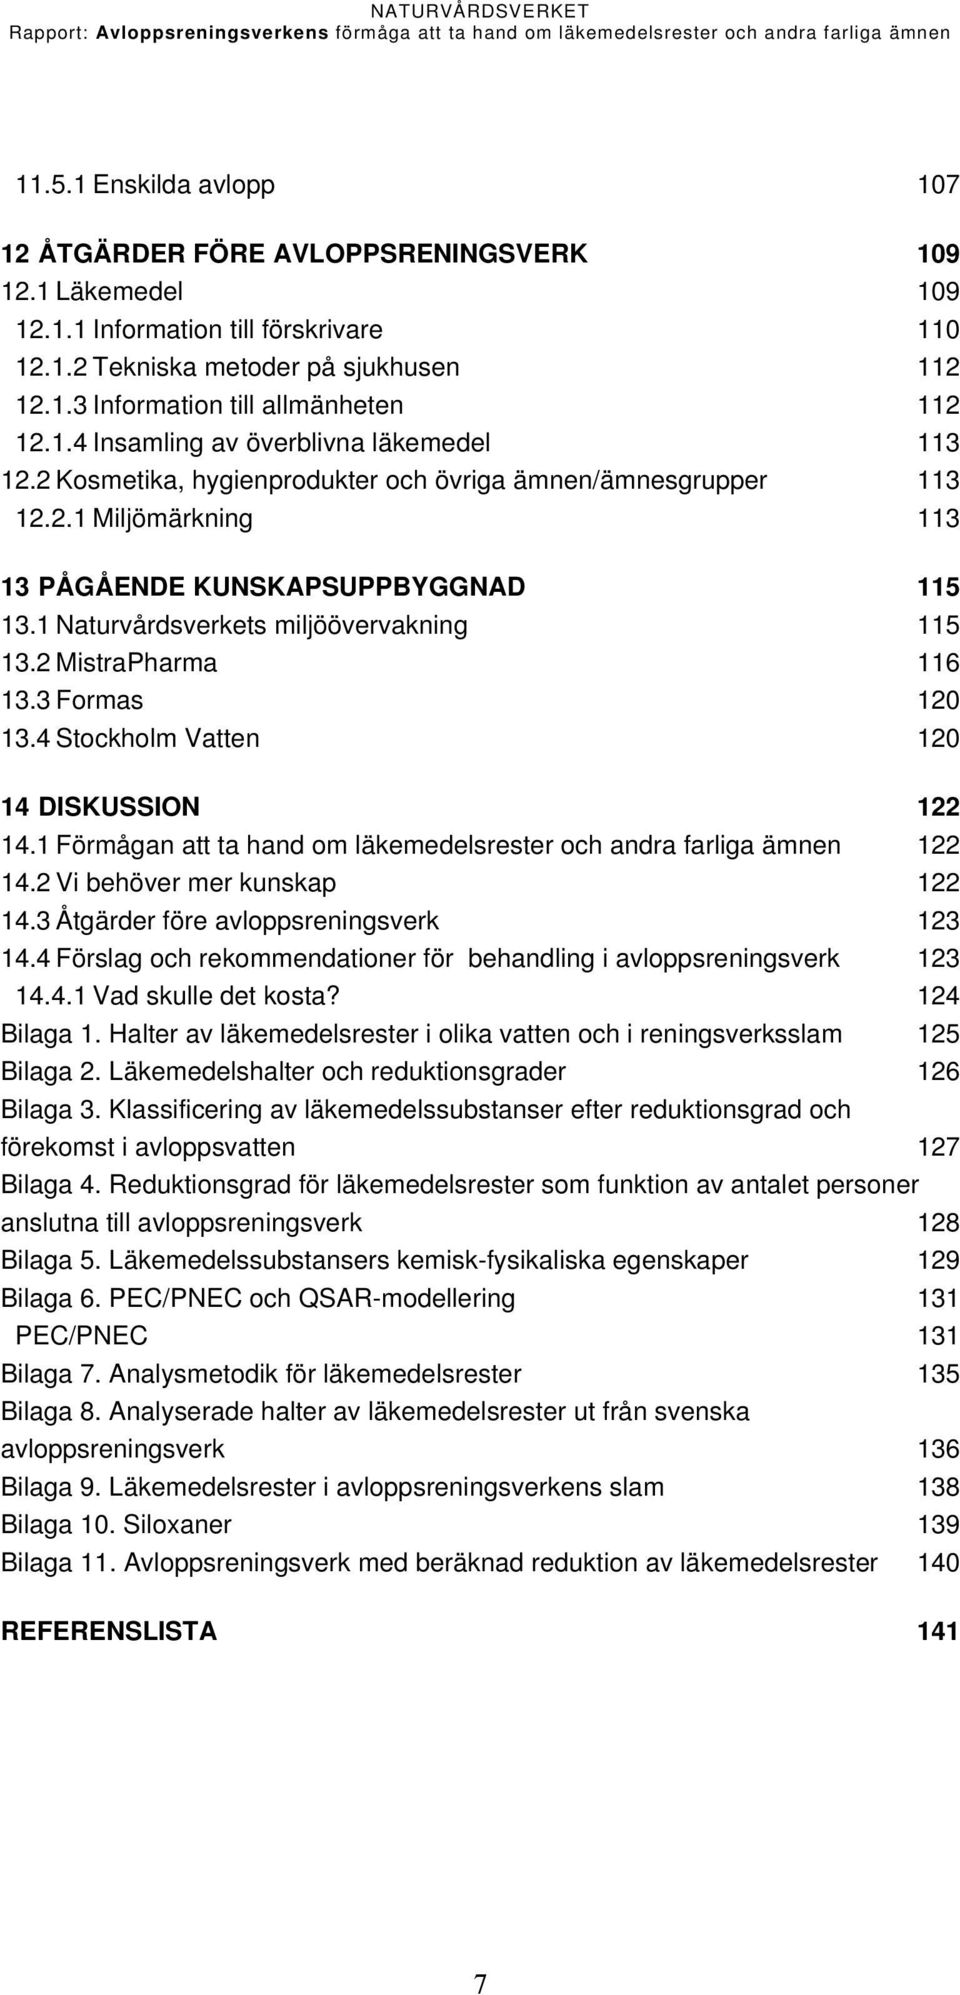 1 Naturvårdsverkets miljöövervakning 115 13.2 MistraPharma 116 13.3 Formas 120 13.4 Stockholm Vatten 120 14 DISKUSSION 122 14.1 Förmågan att ta hand om läkemedelsrester och andra farliga ämnen 122 14.